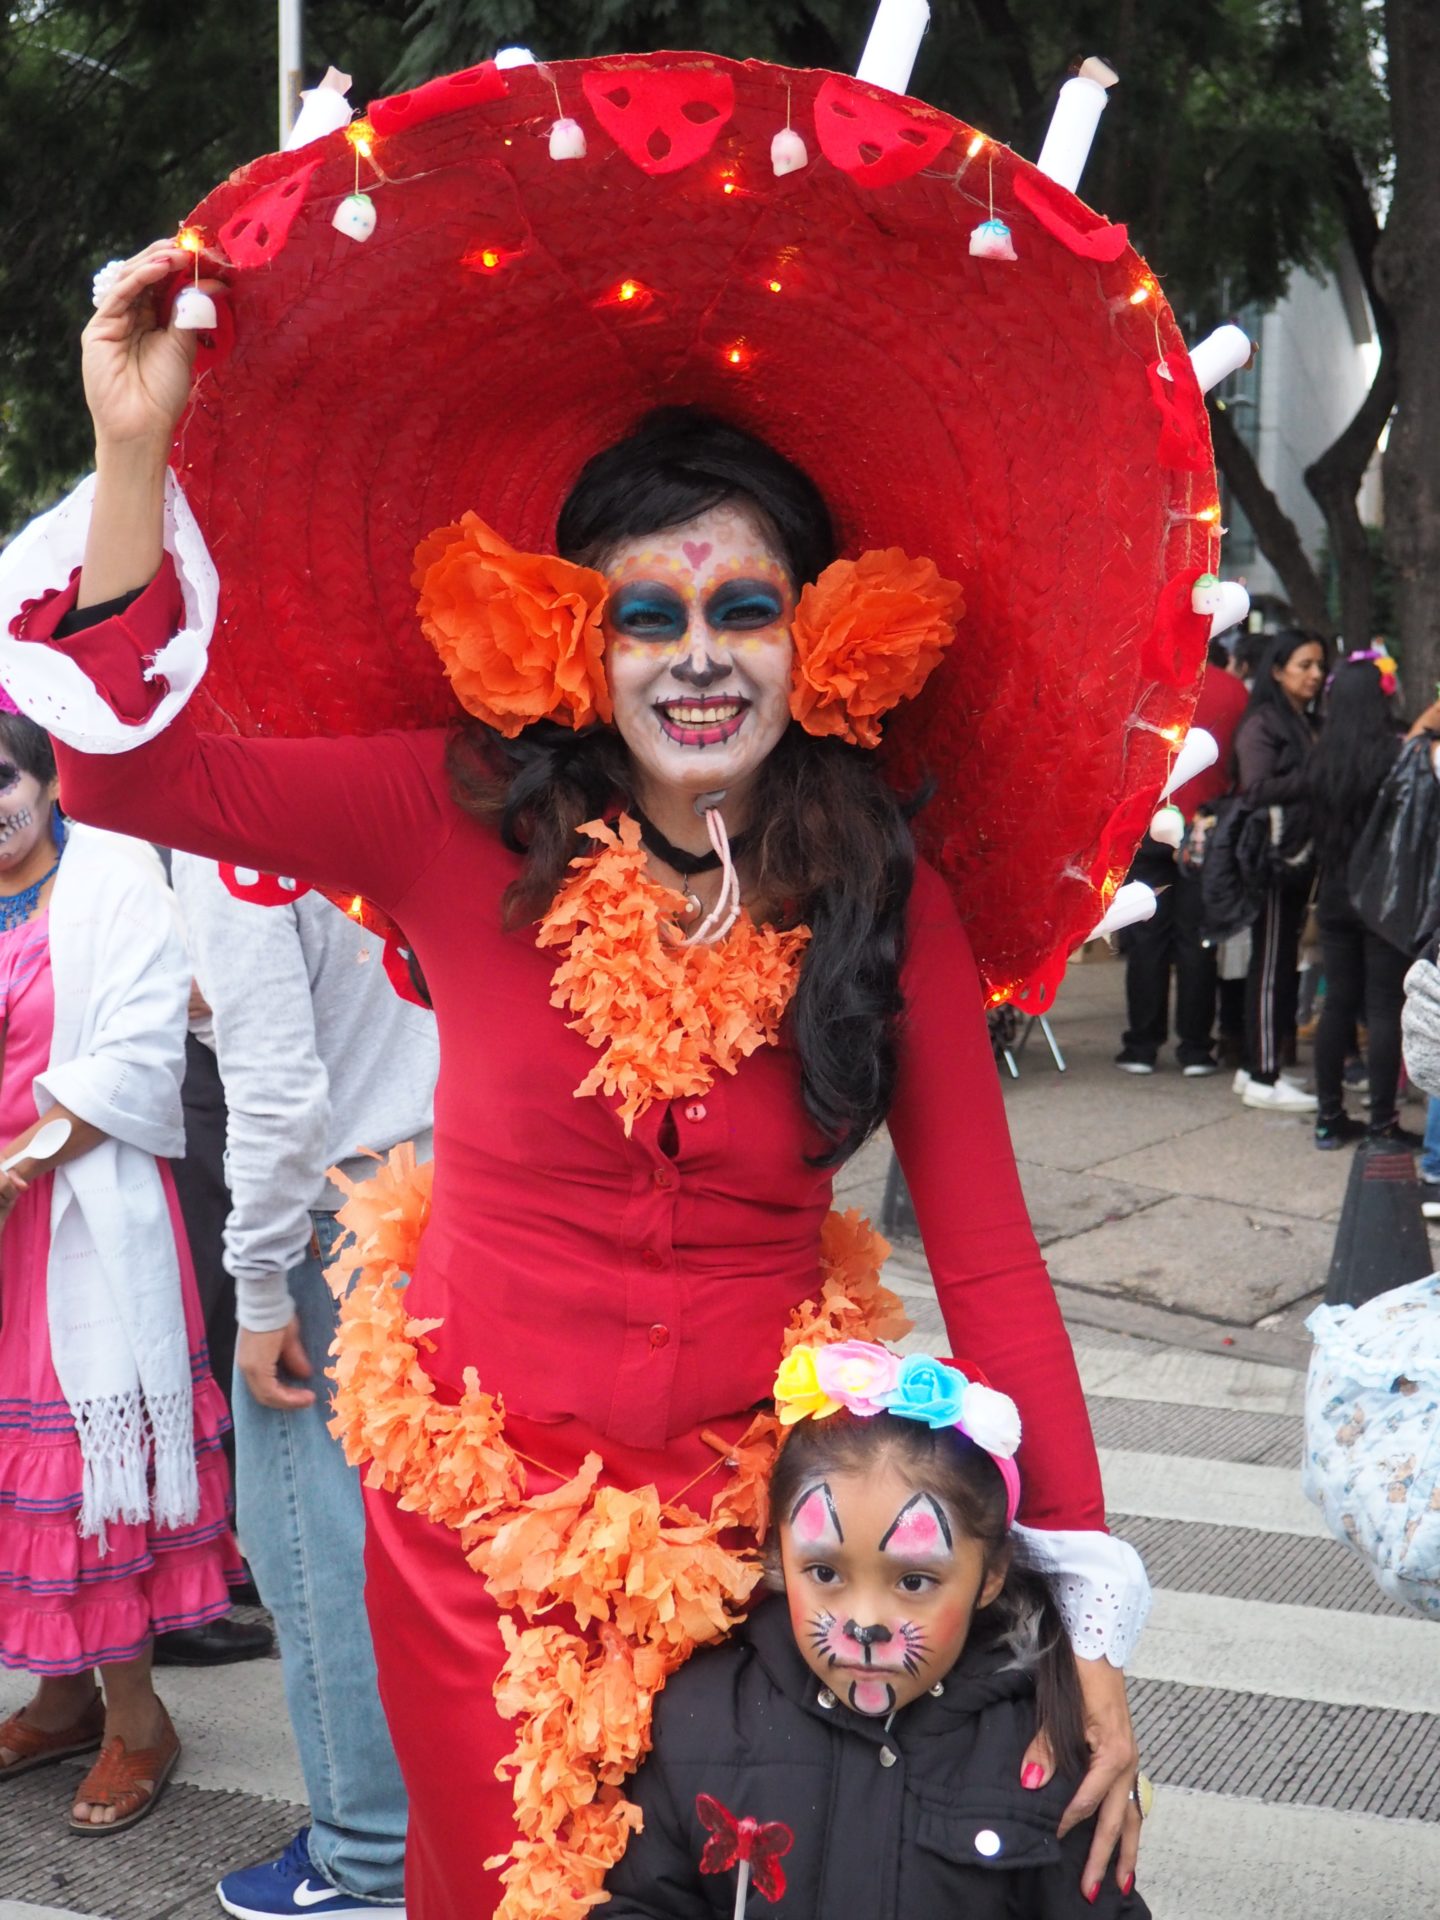 PHOTOS: Mexico's classy Catrinas on parade - Tiny Travelogue